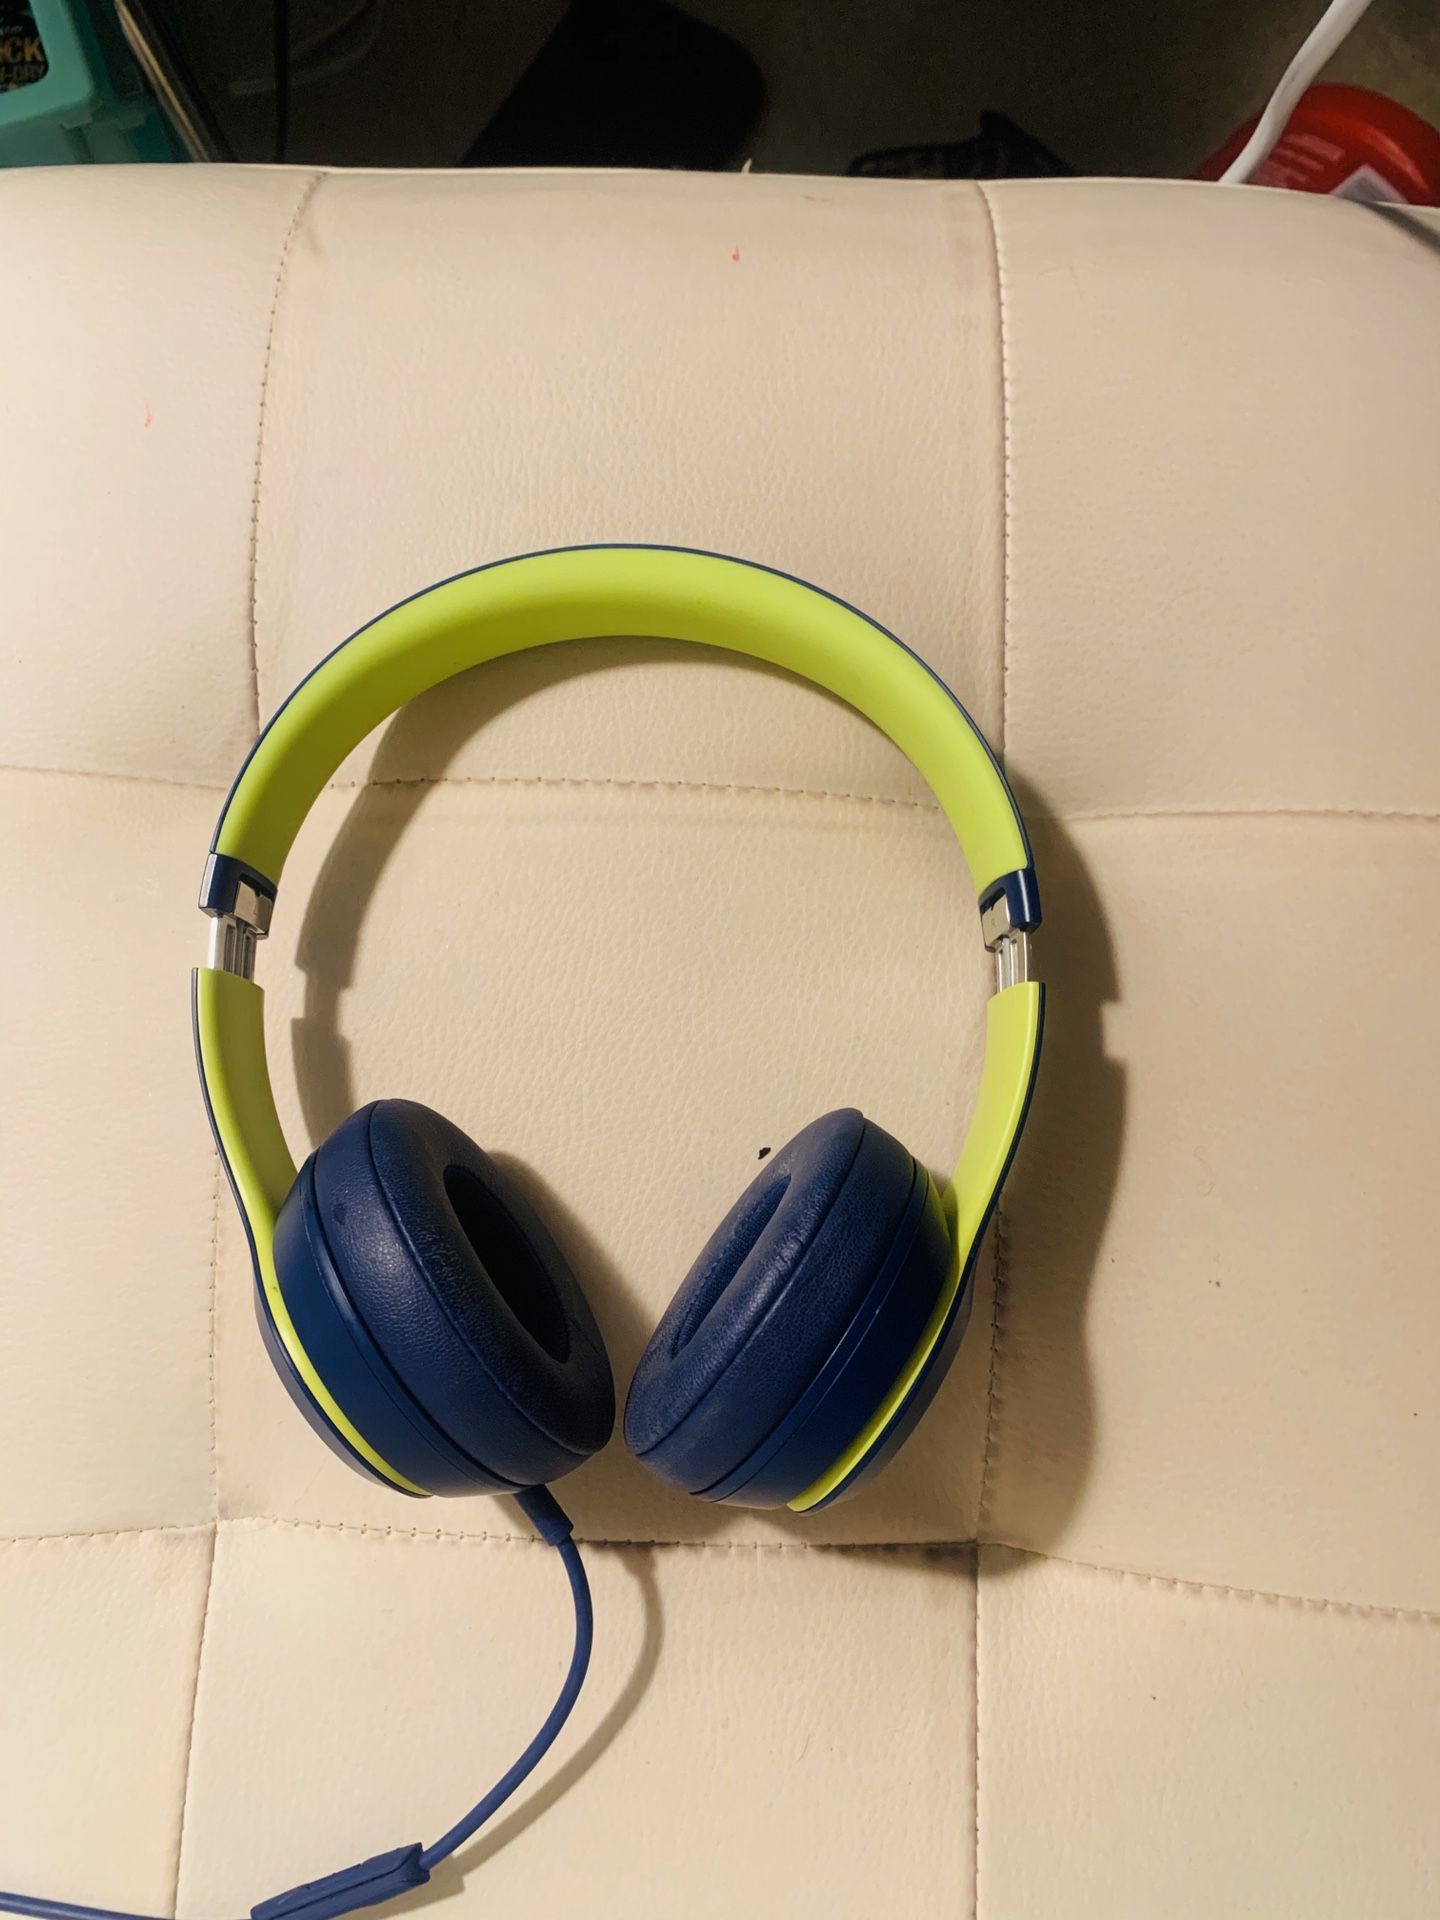 Beats by Dre solo 3 wireless noise canceling headphones